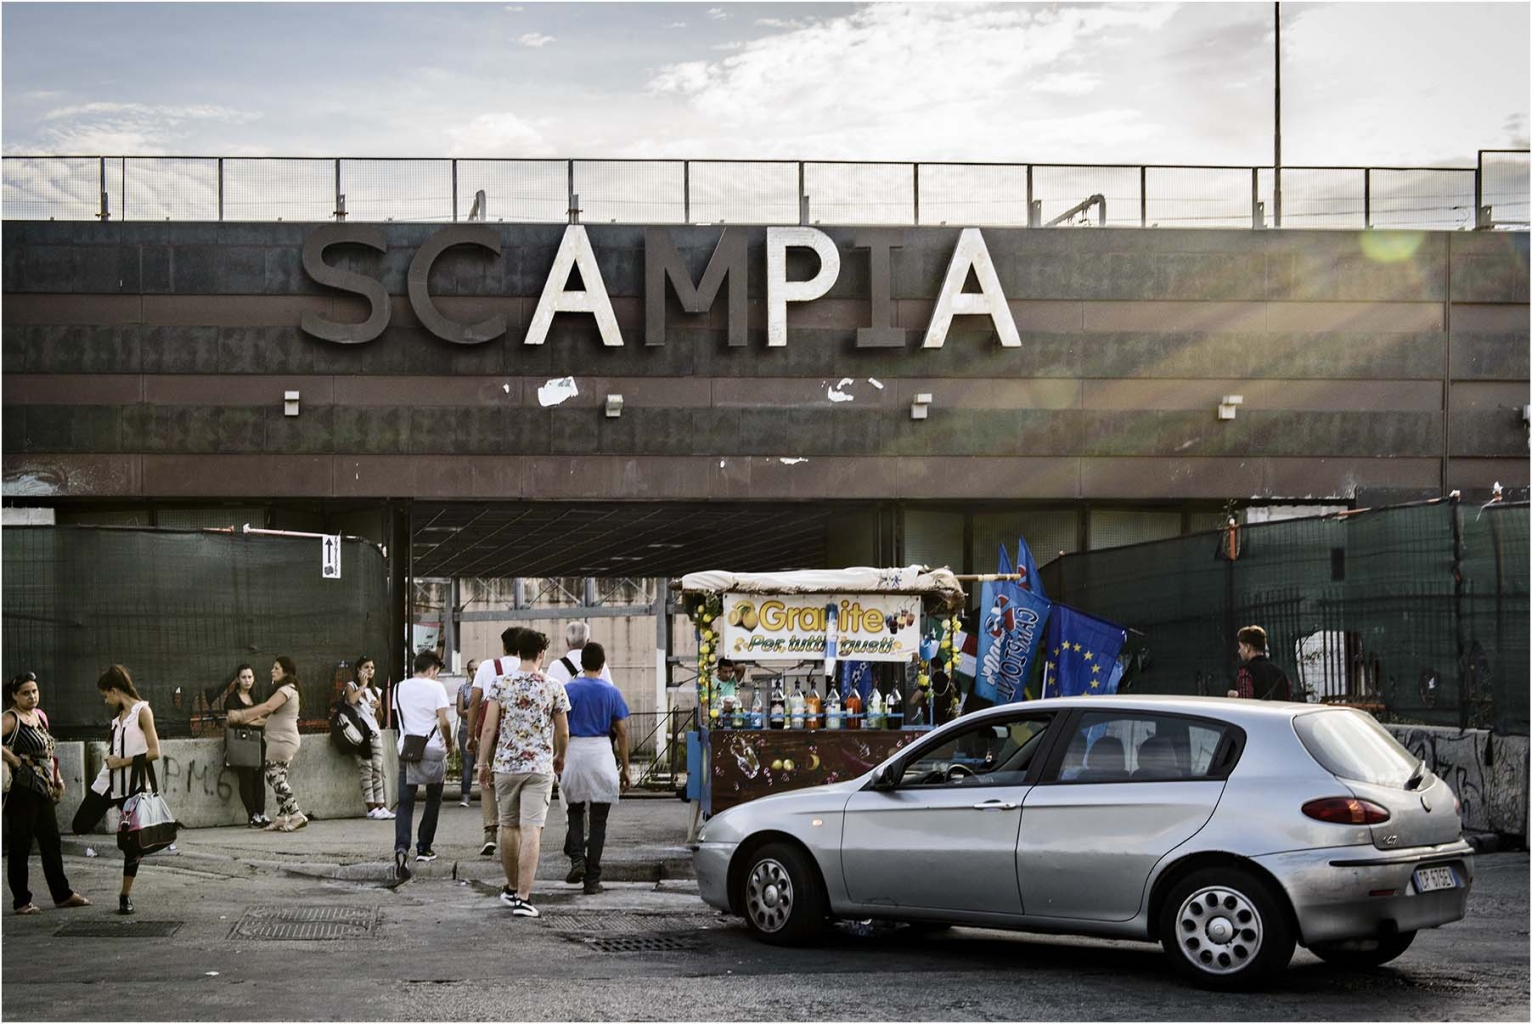 Manrica Caponi "Scampia 1" - Sez. RRSP Premio ex-aequo